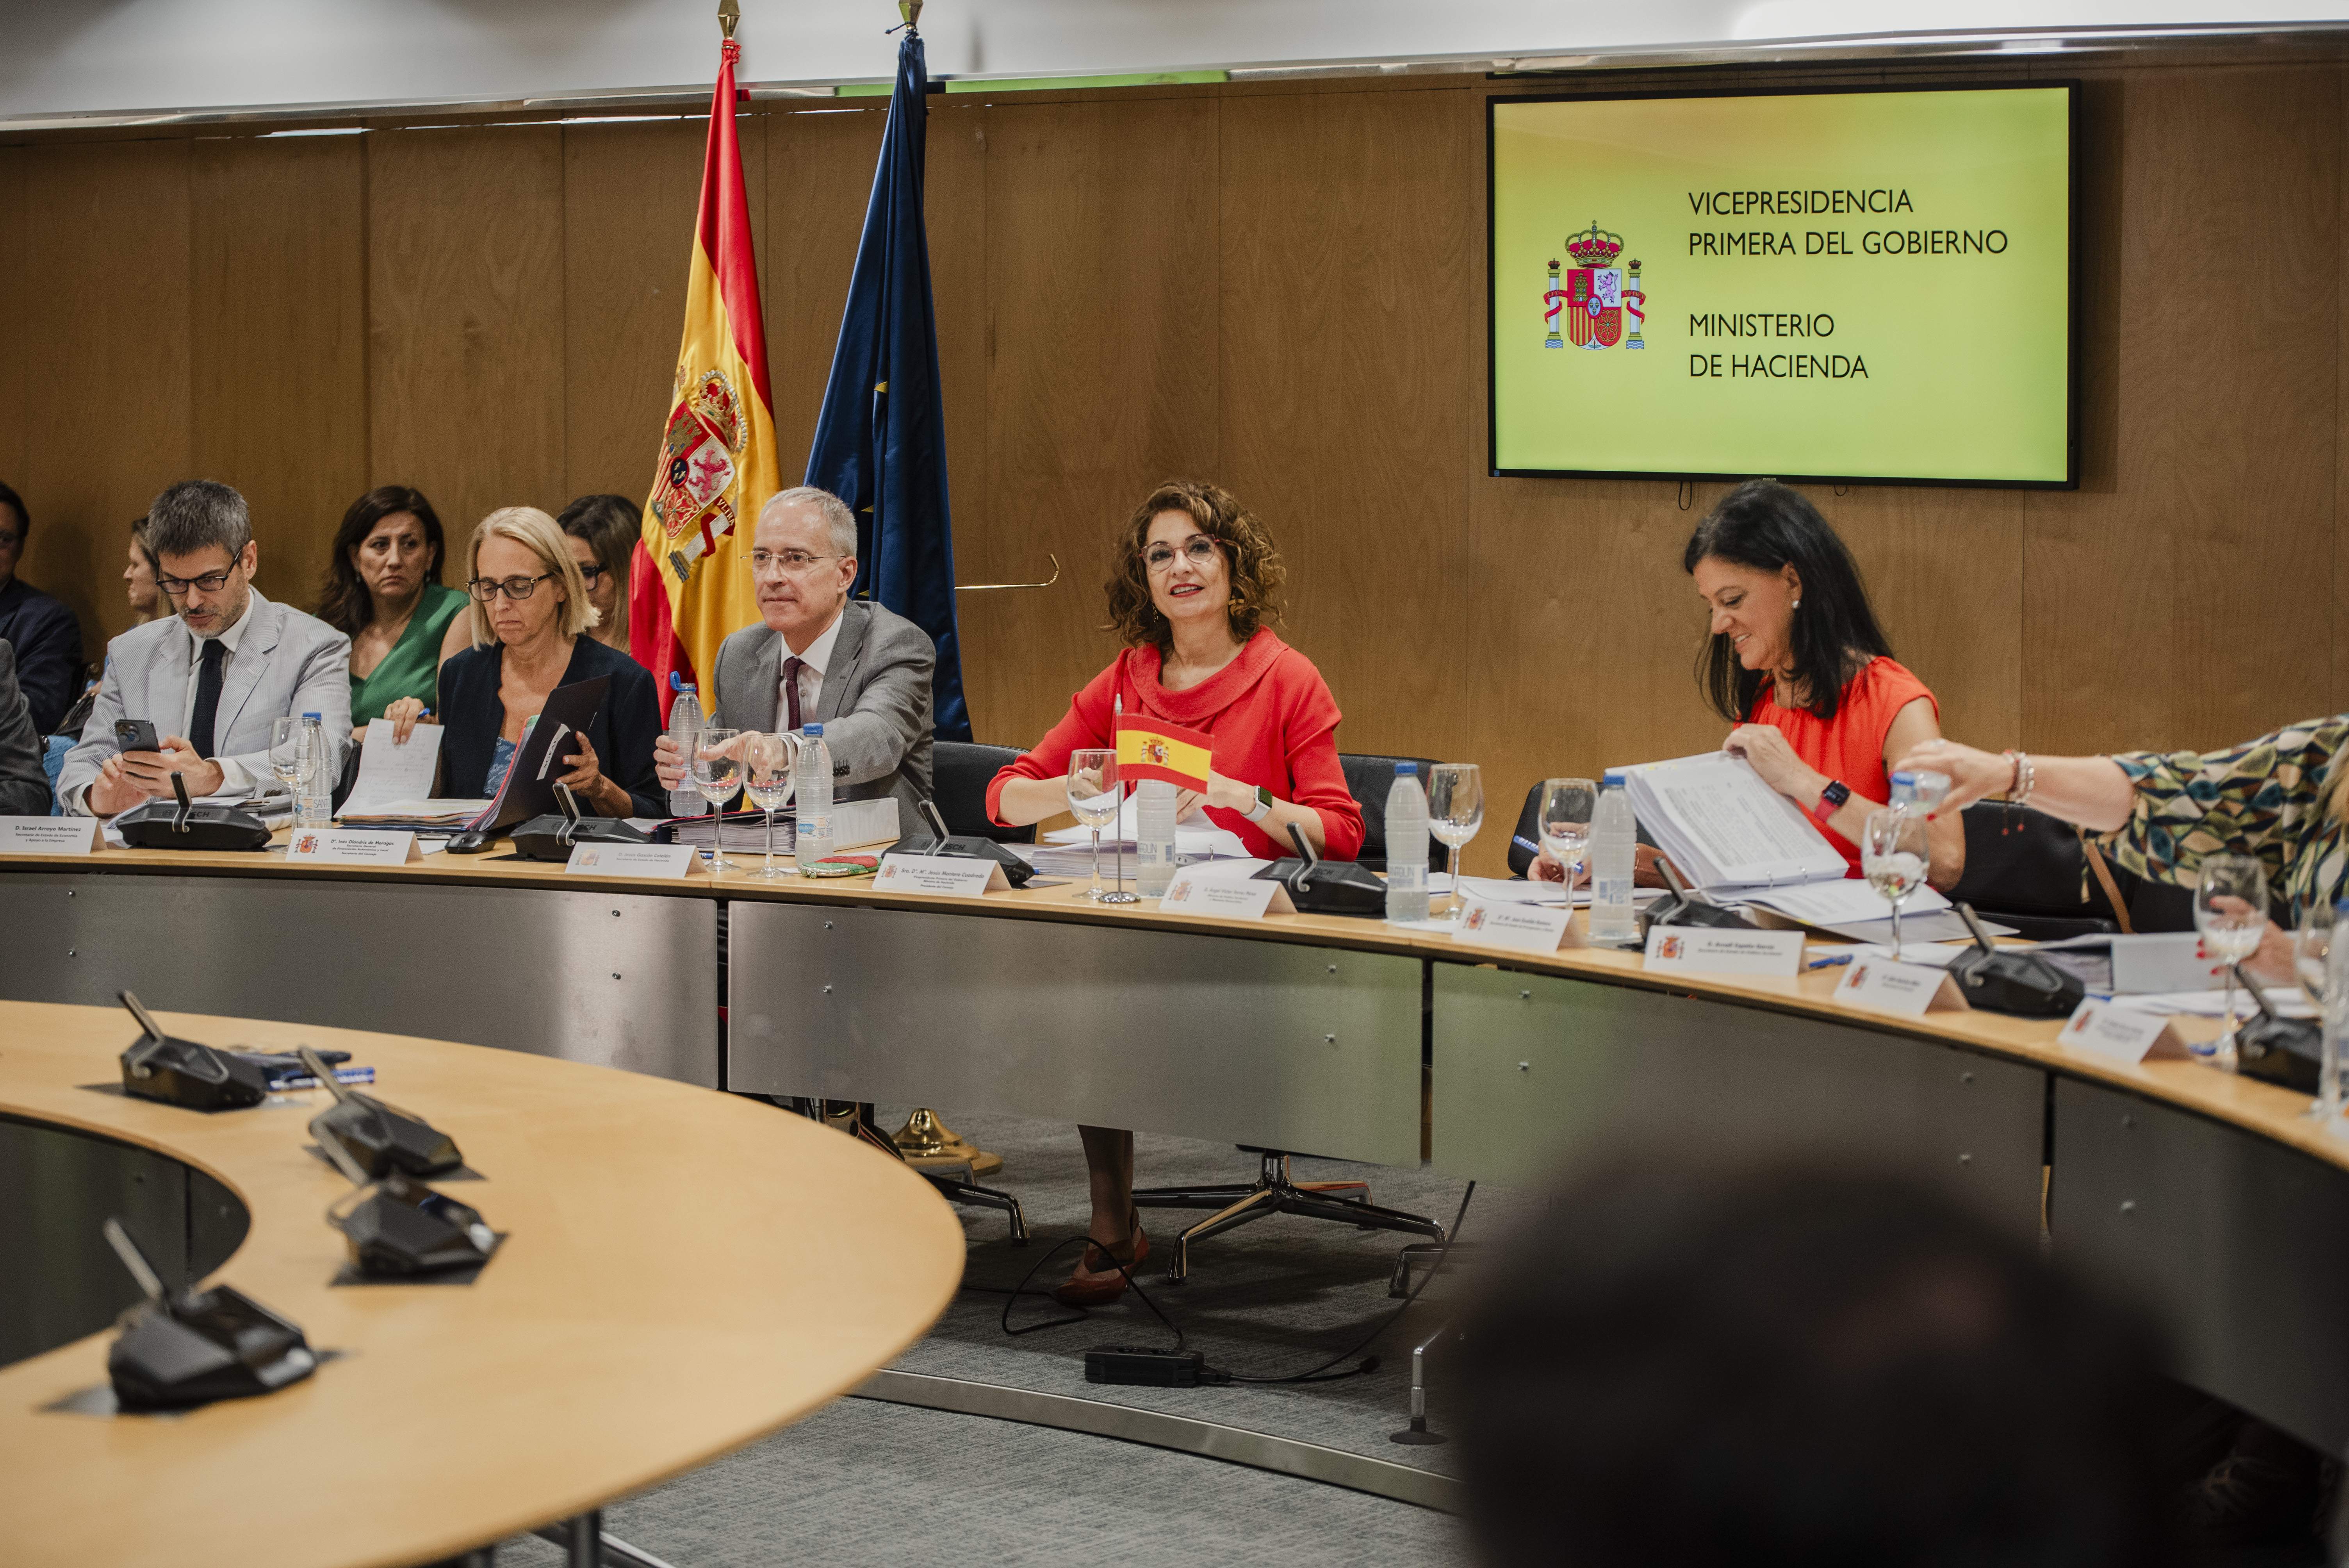 Page y autonomías del PP hacen pinza contra "el agravio injusto" de la financiación singular catalana